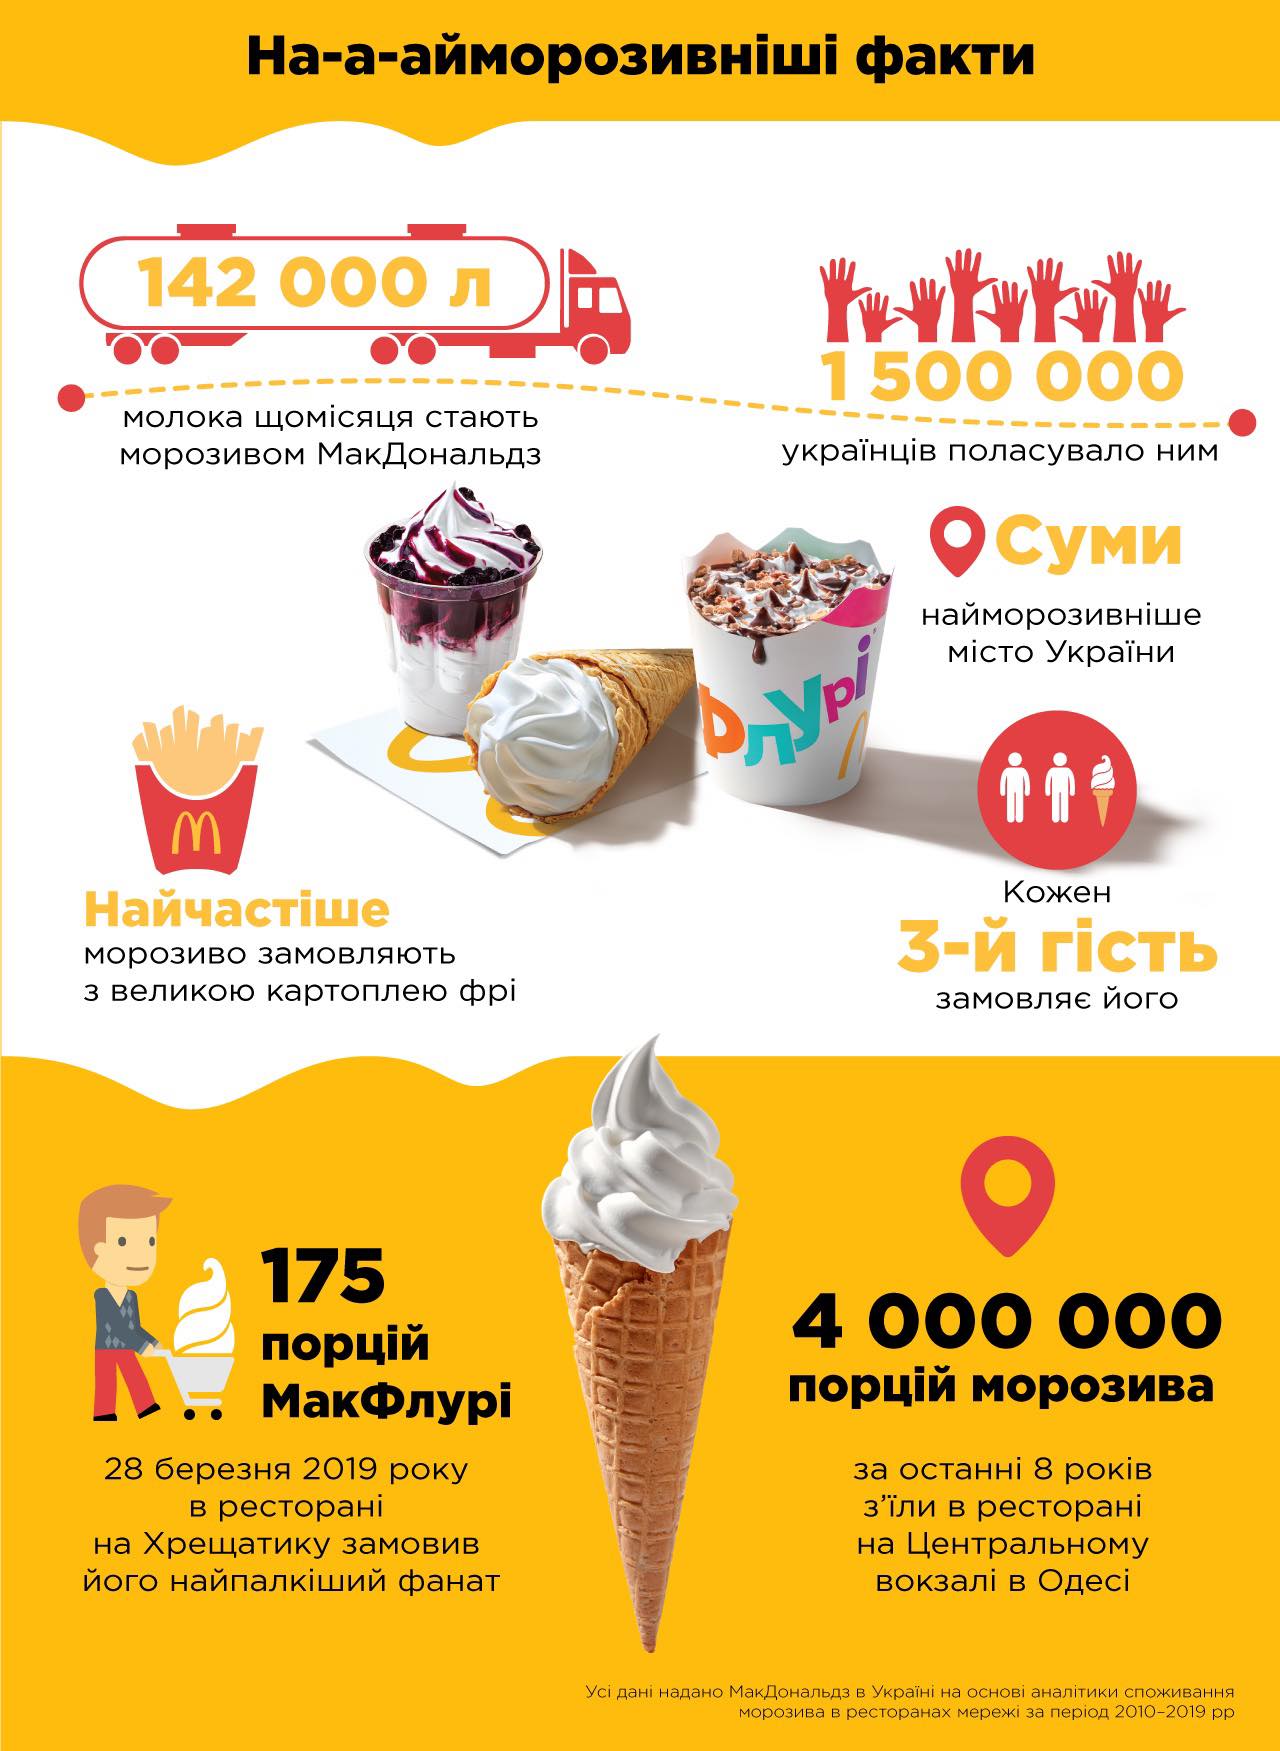 Инфографика МакДональдз о мороженом